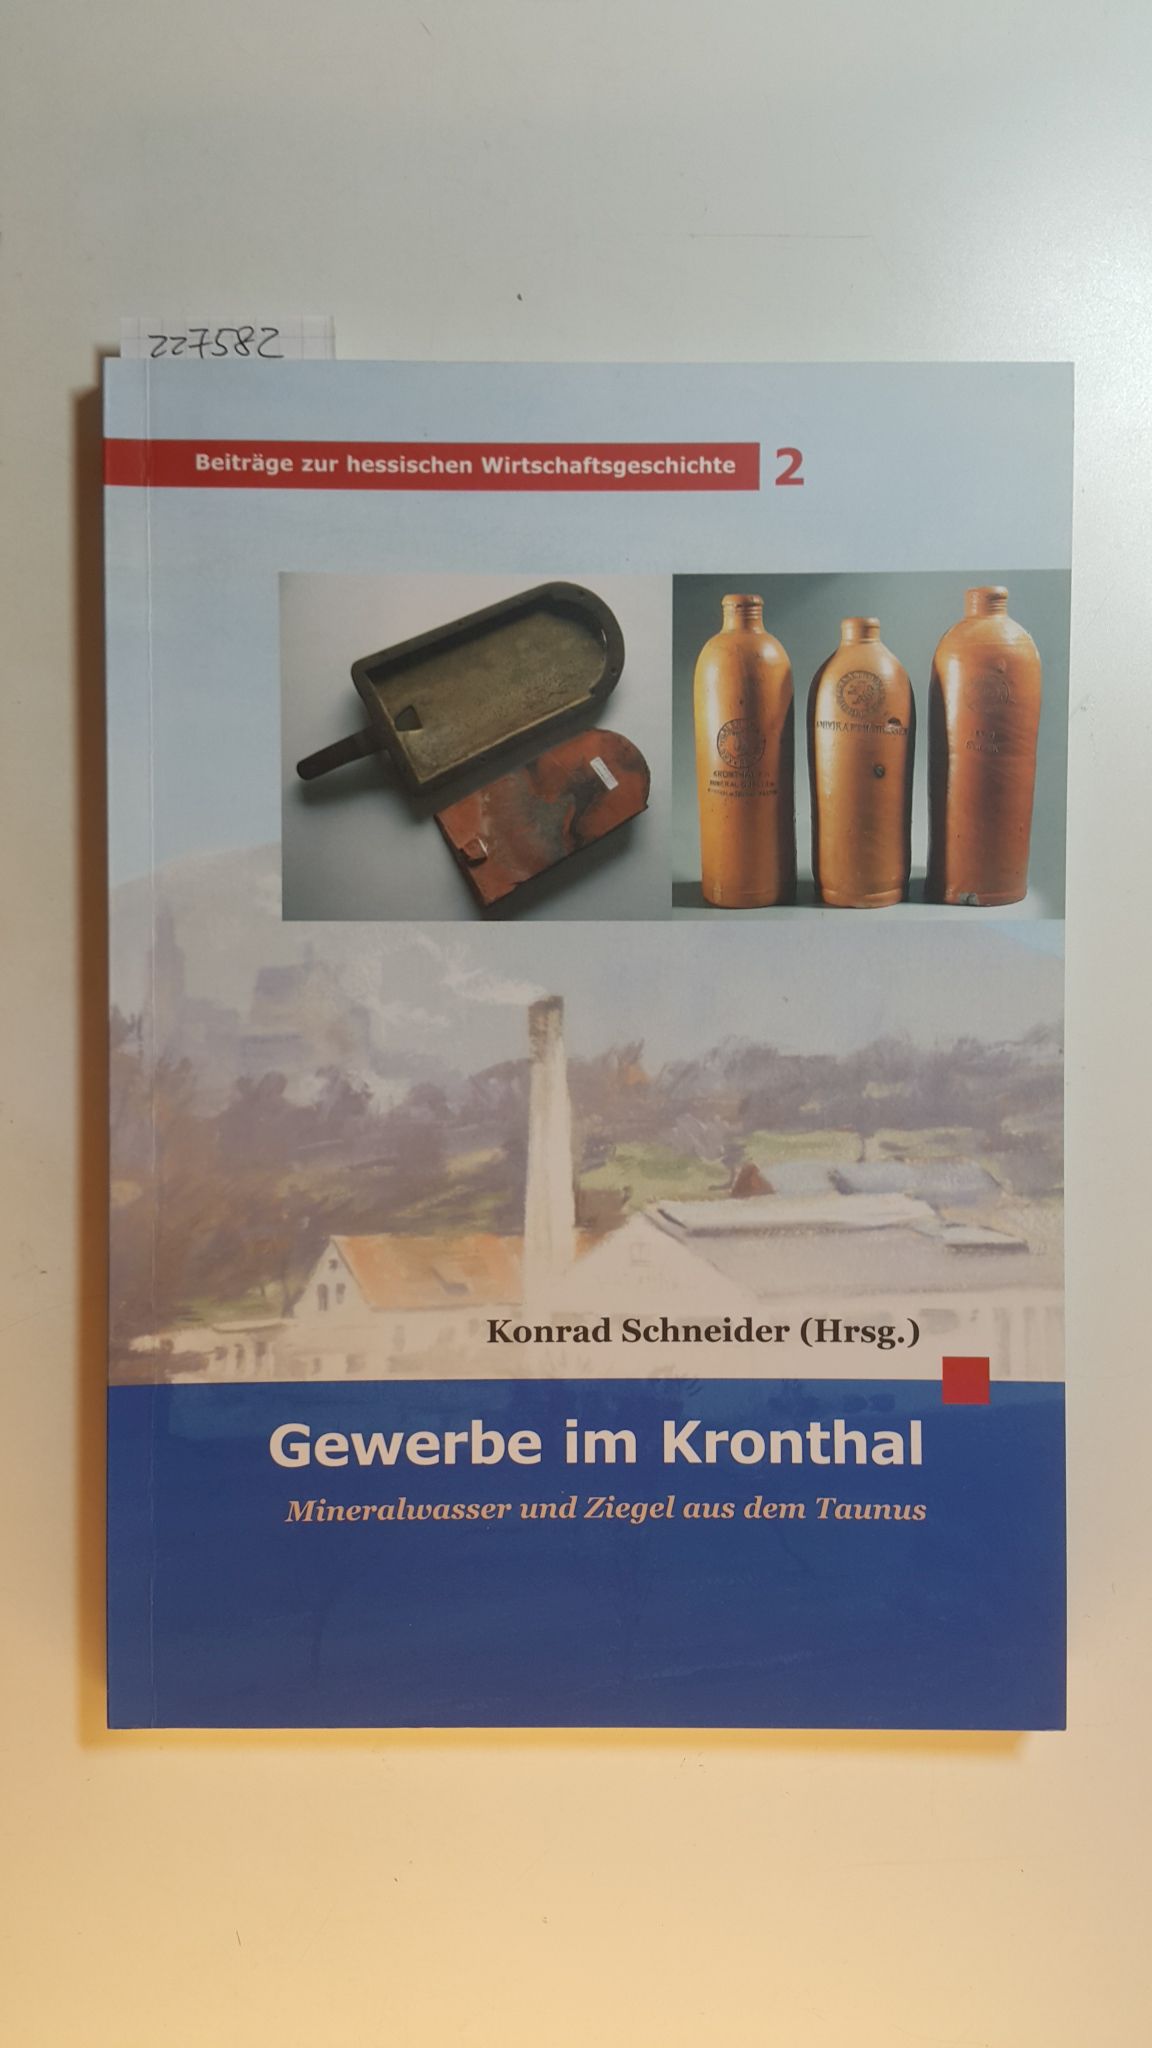 Gewerbe im Kronthal : Mineralwasser und Ziegel aus dem Taunus - Schneider, Konrad [Hrsg.]